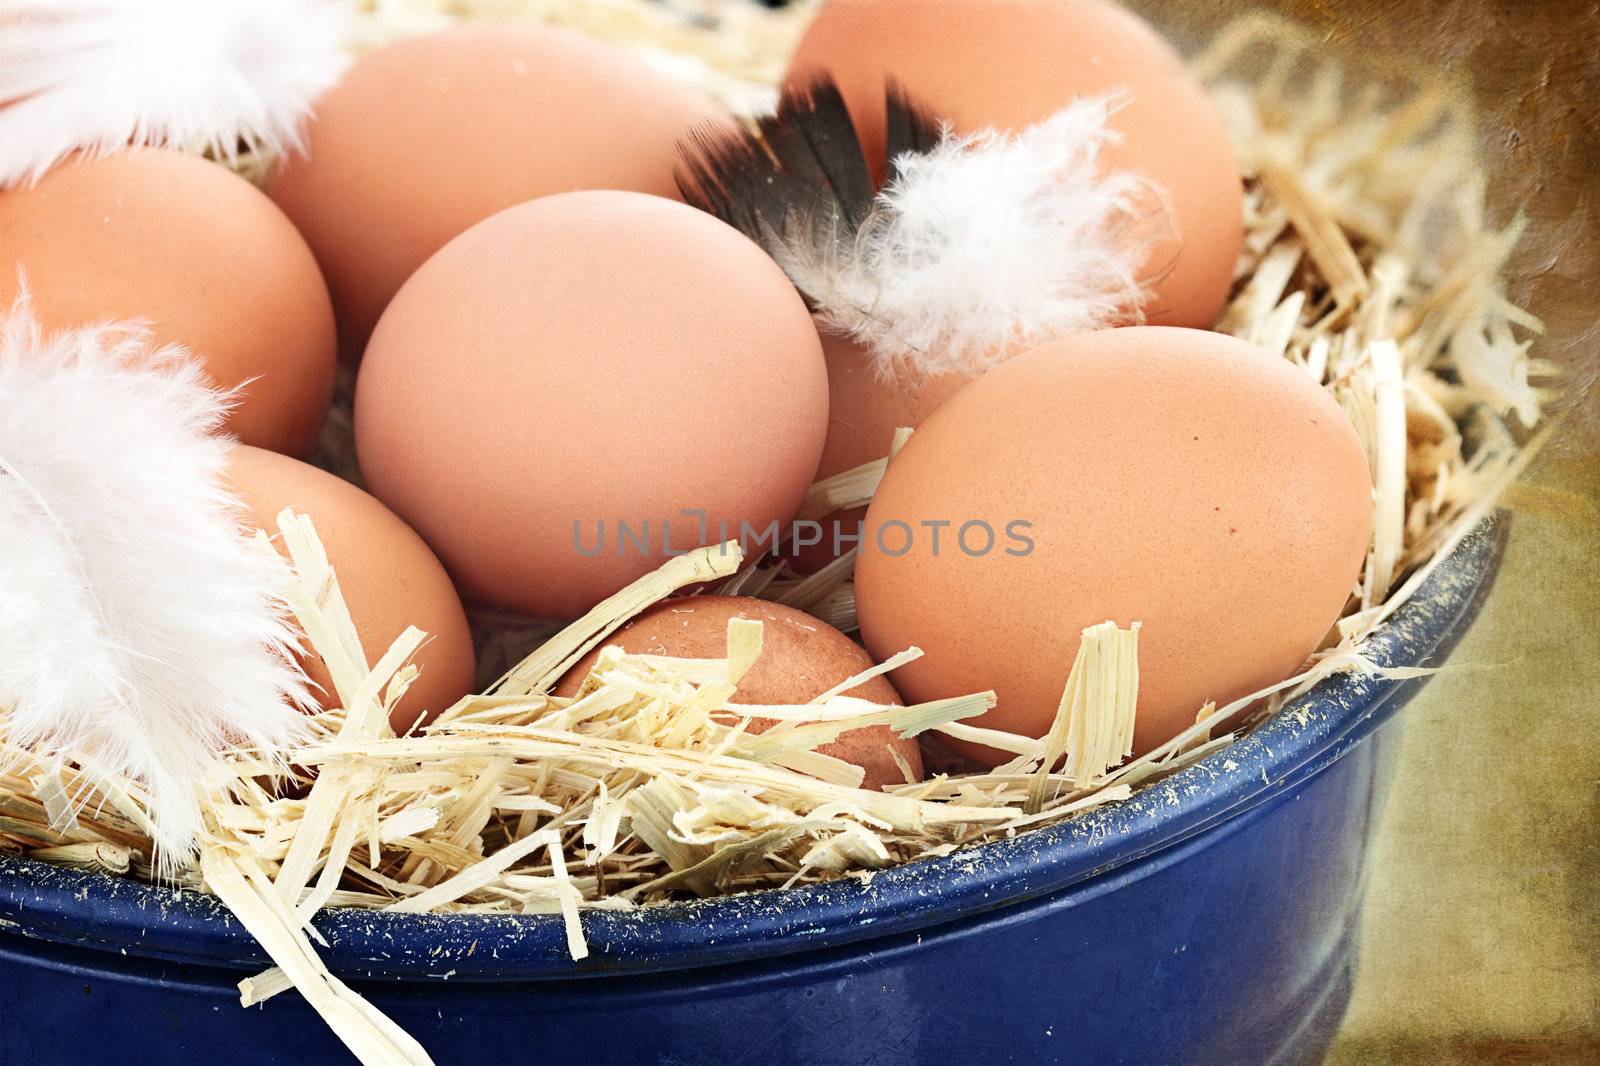 Fresh farm eggs by StephanieFrey